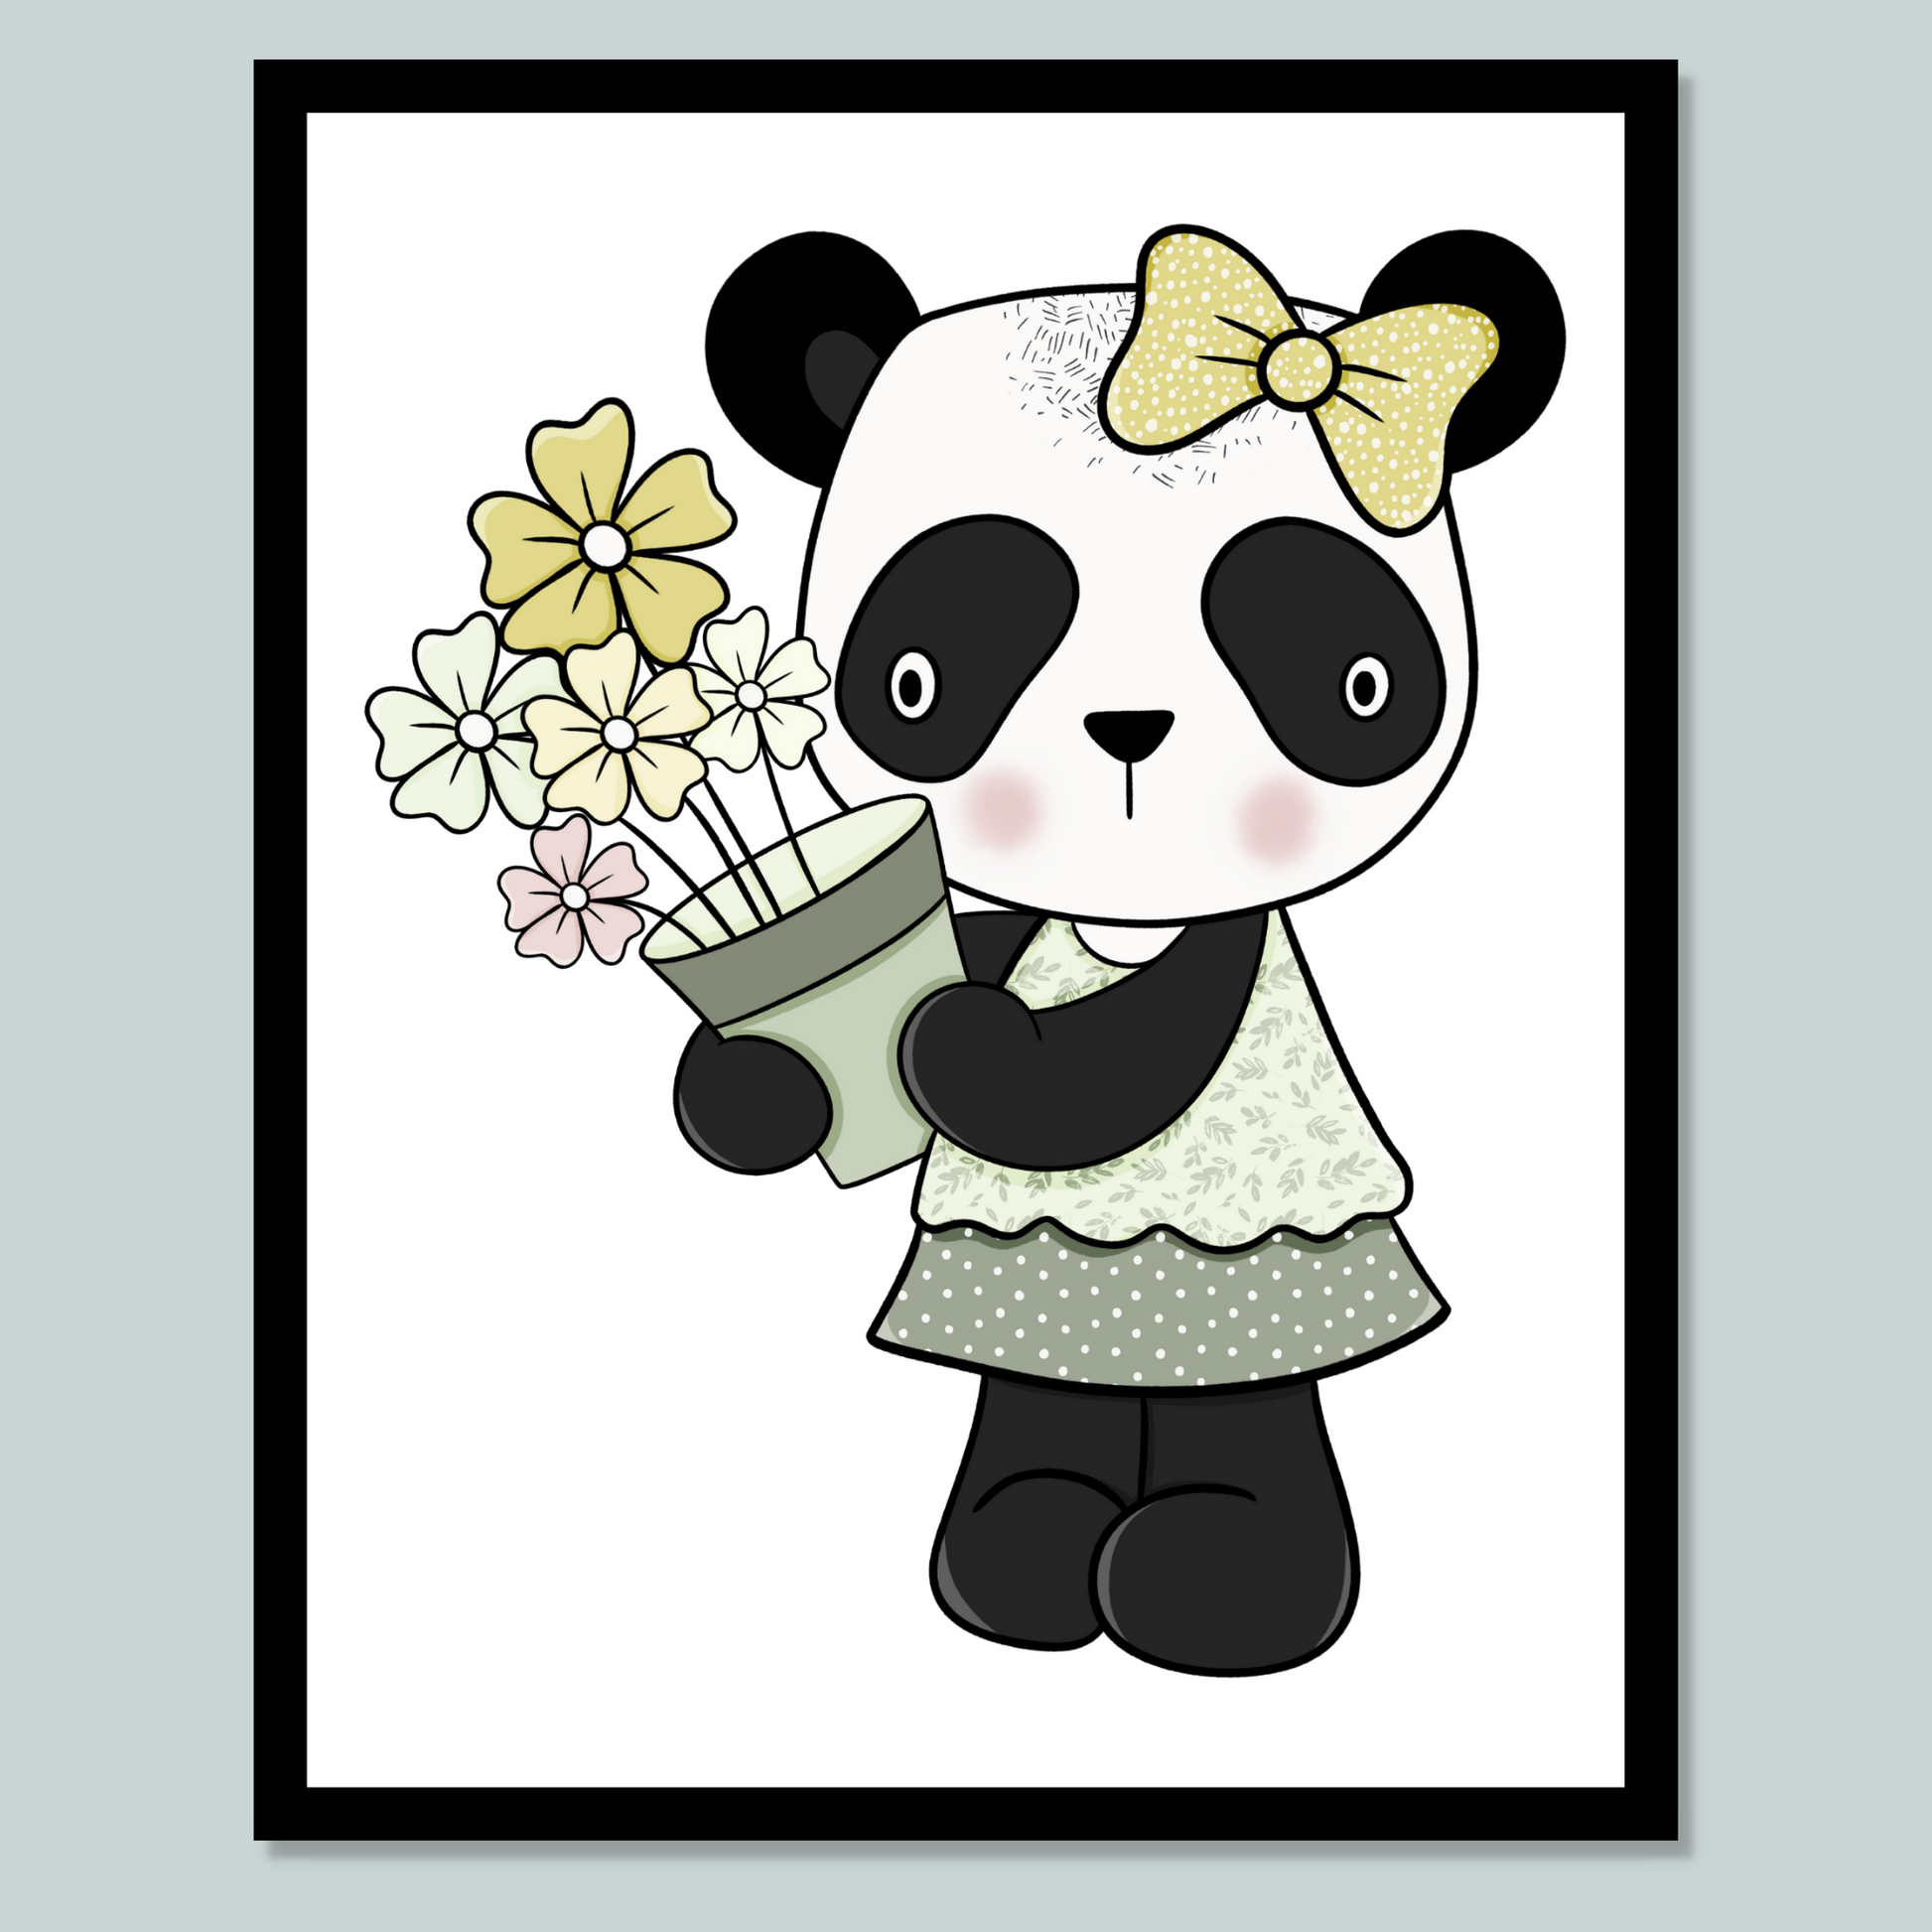 Grafisk illustrasjon av en panda-jente. Hun har på grønt skjørt med hvite prikker og lysegrønn overdel med hvite blomster. På hodet har hun en gul sløyfe med hvite prikker. Hun holder en potte med gul, grønn og rosa blomster i hendene.